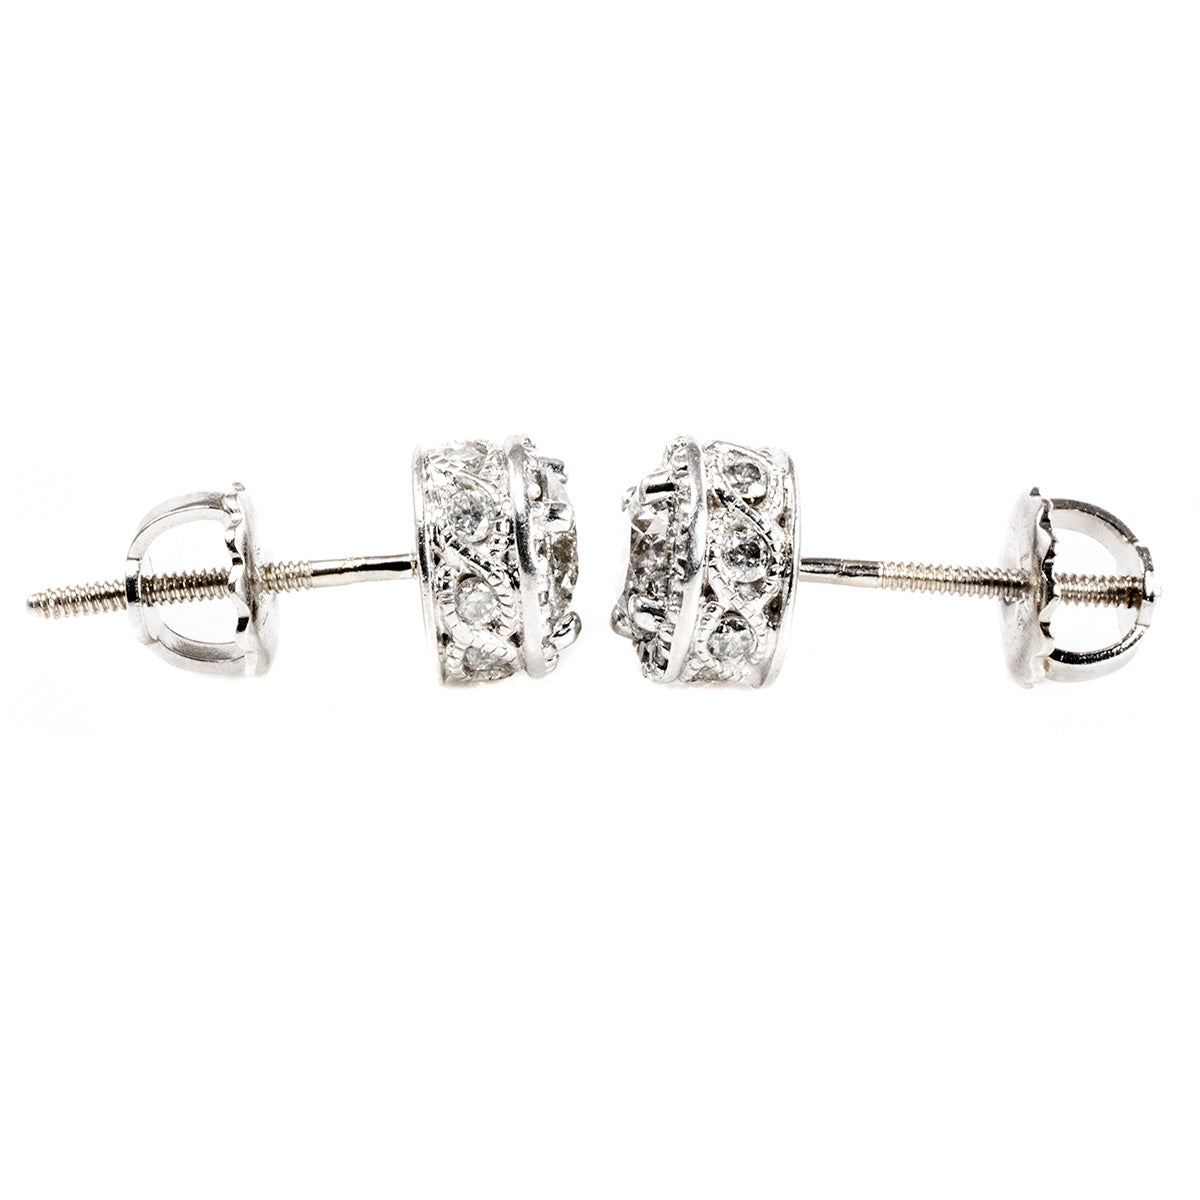 10 k White Gold Diamond Halo Earrings